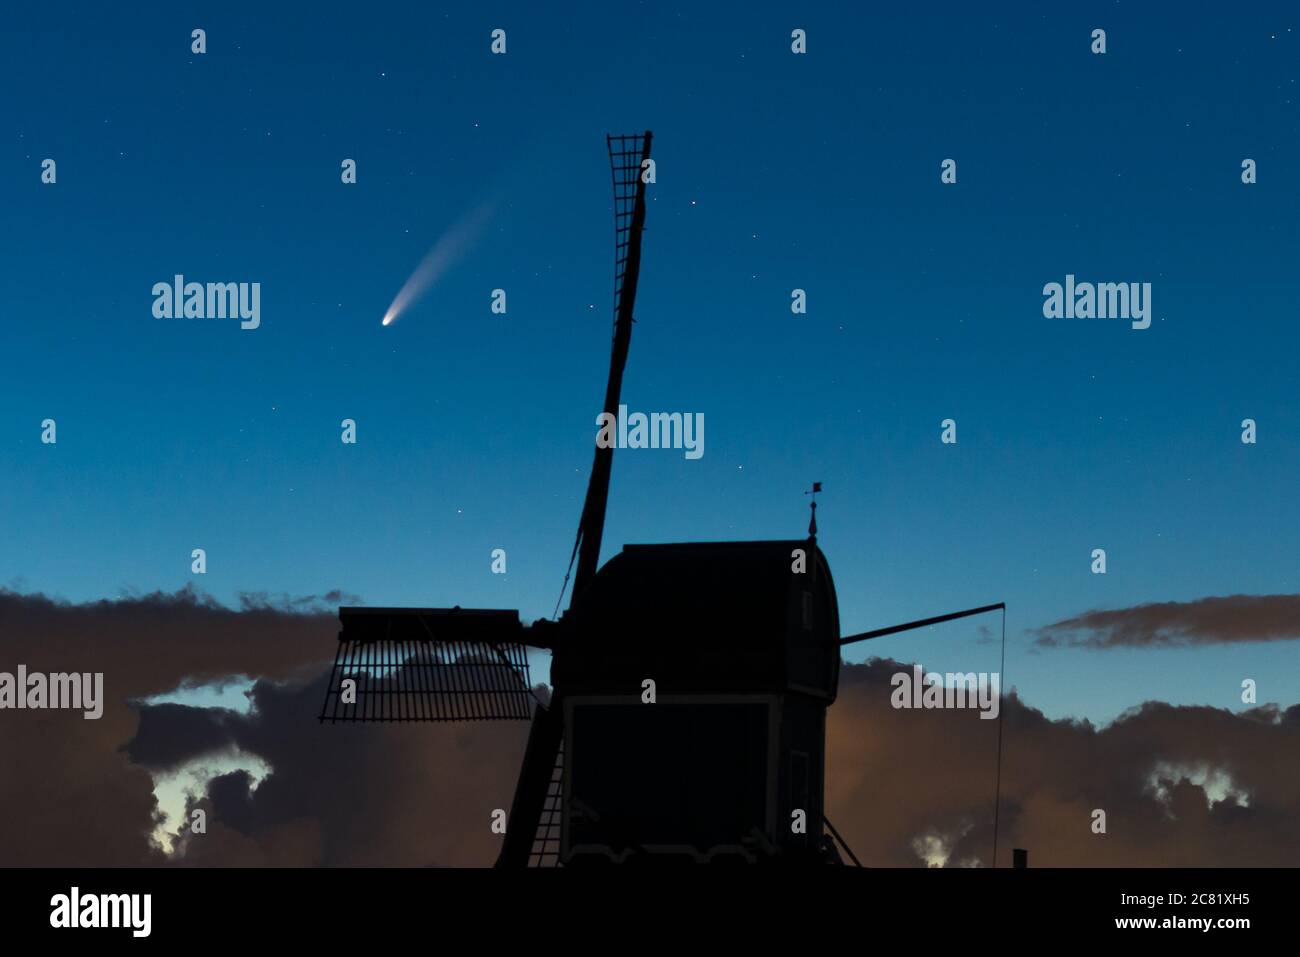 Atemberaubendes Weltraumbild, wo der Komet 'Neowise' nachts den Himmel überquert. Eine traditionelle holländische Windmühle ist gegen den Mittsommernachthimmel silhouettiert. Stockfoto